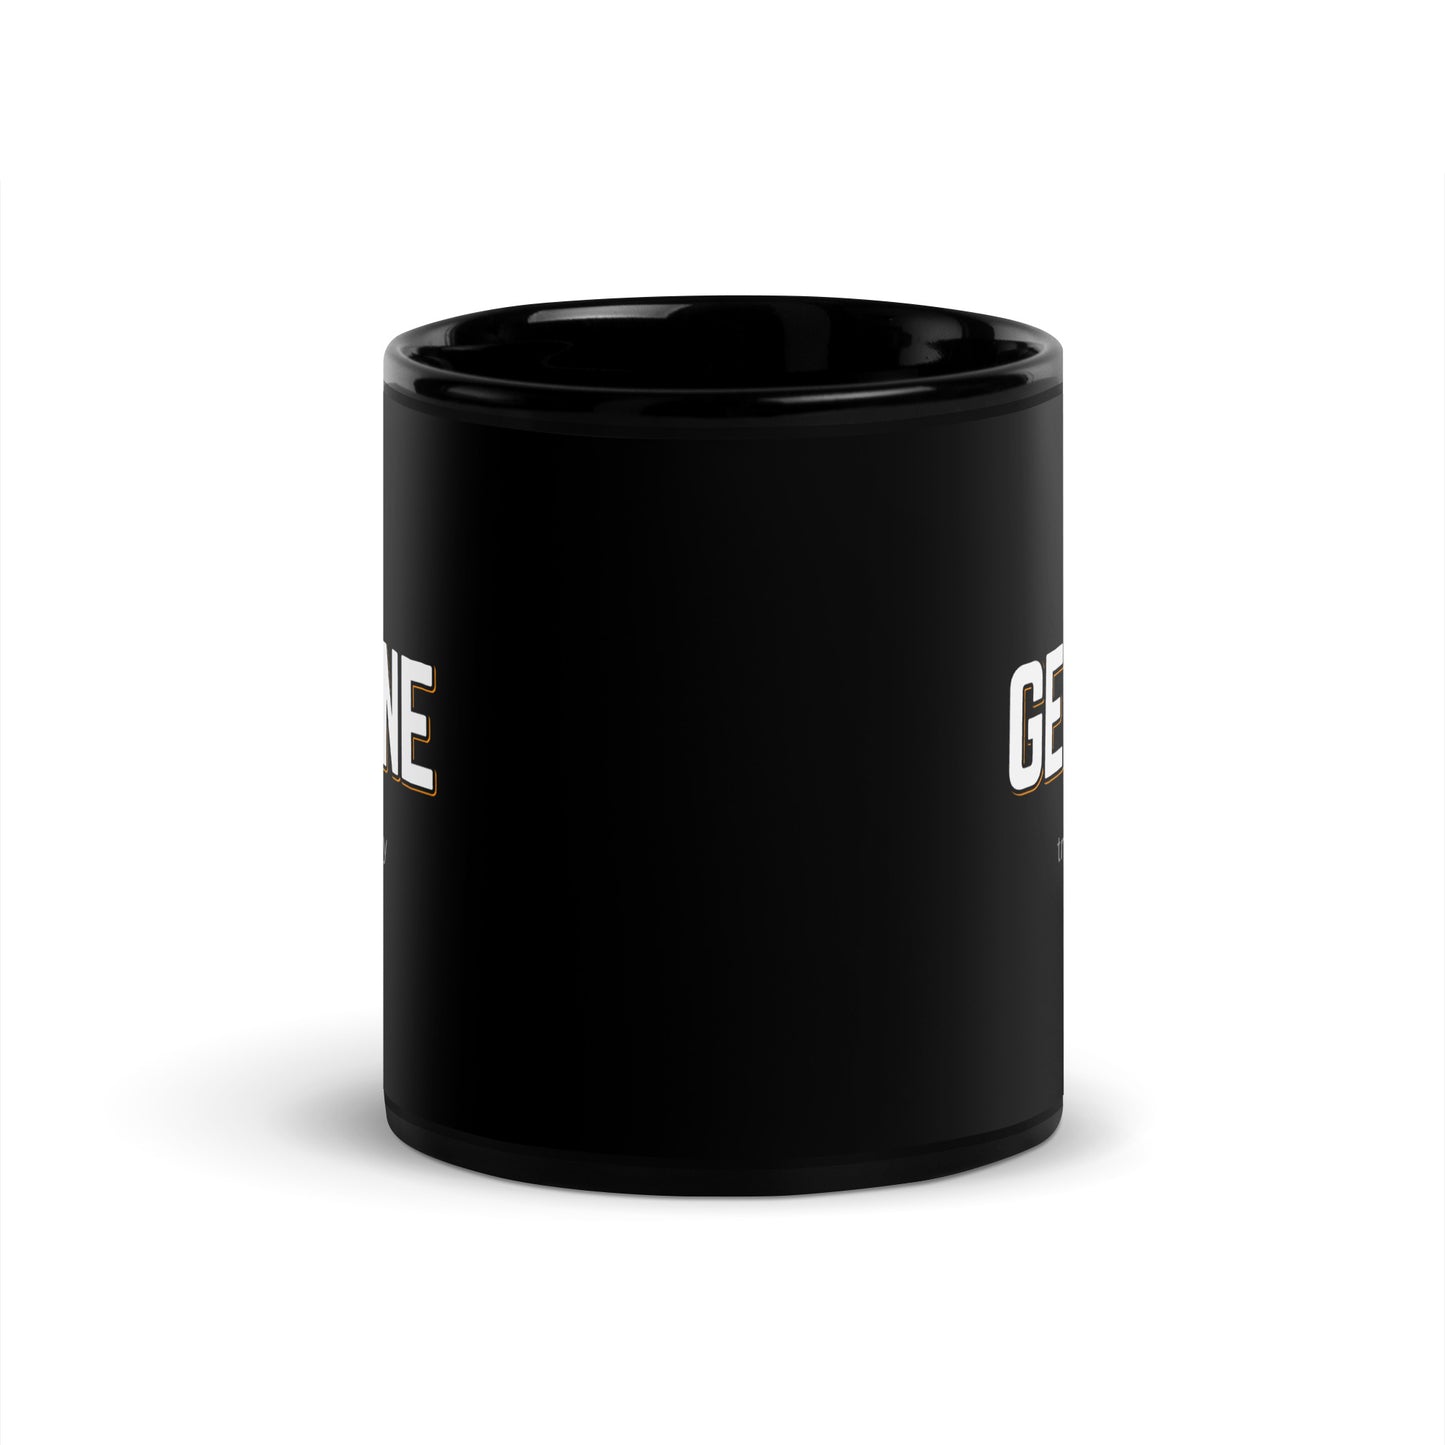 GENUINE Black Coffee Mug Bold 11 oz or 15 oz